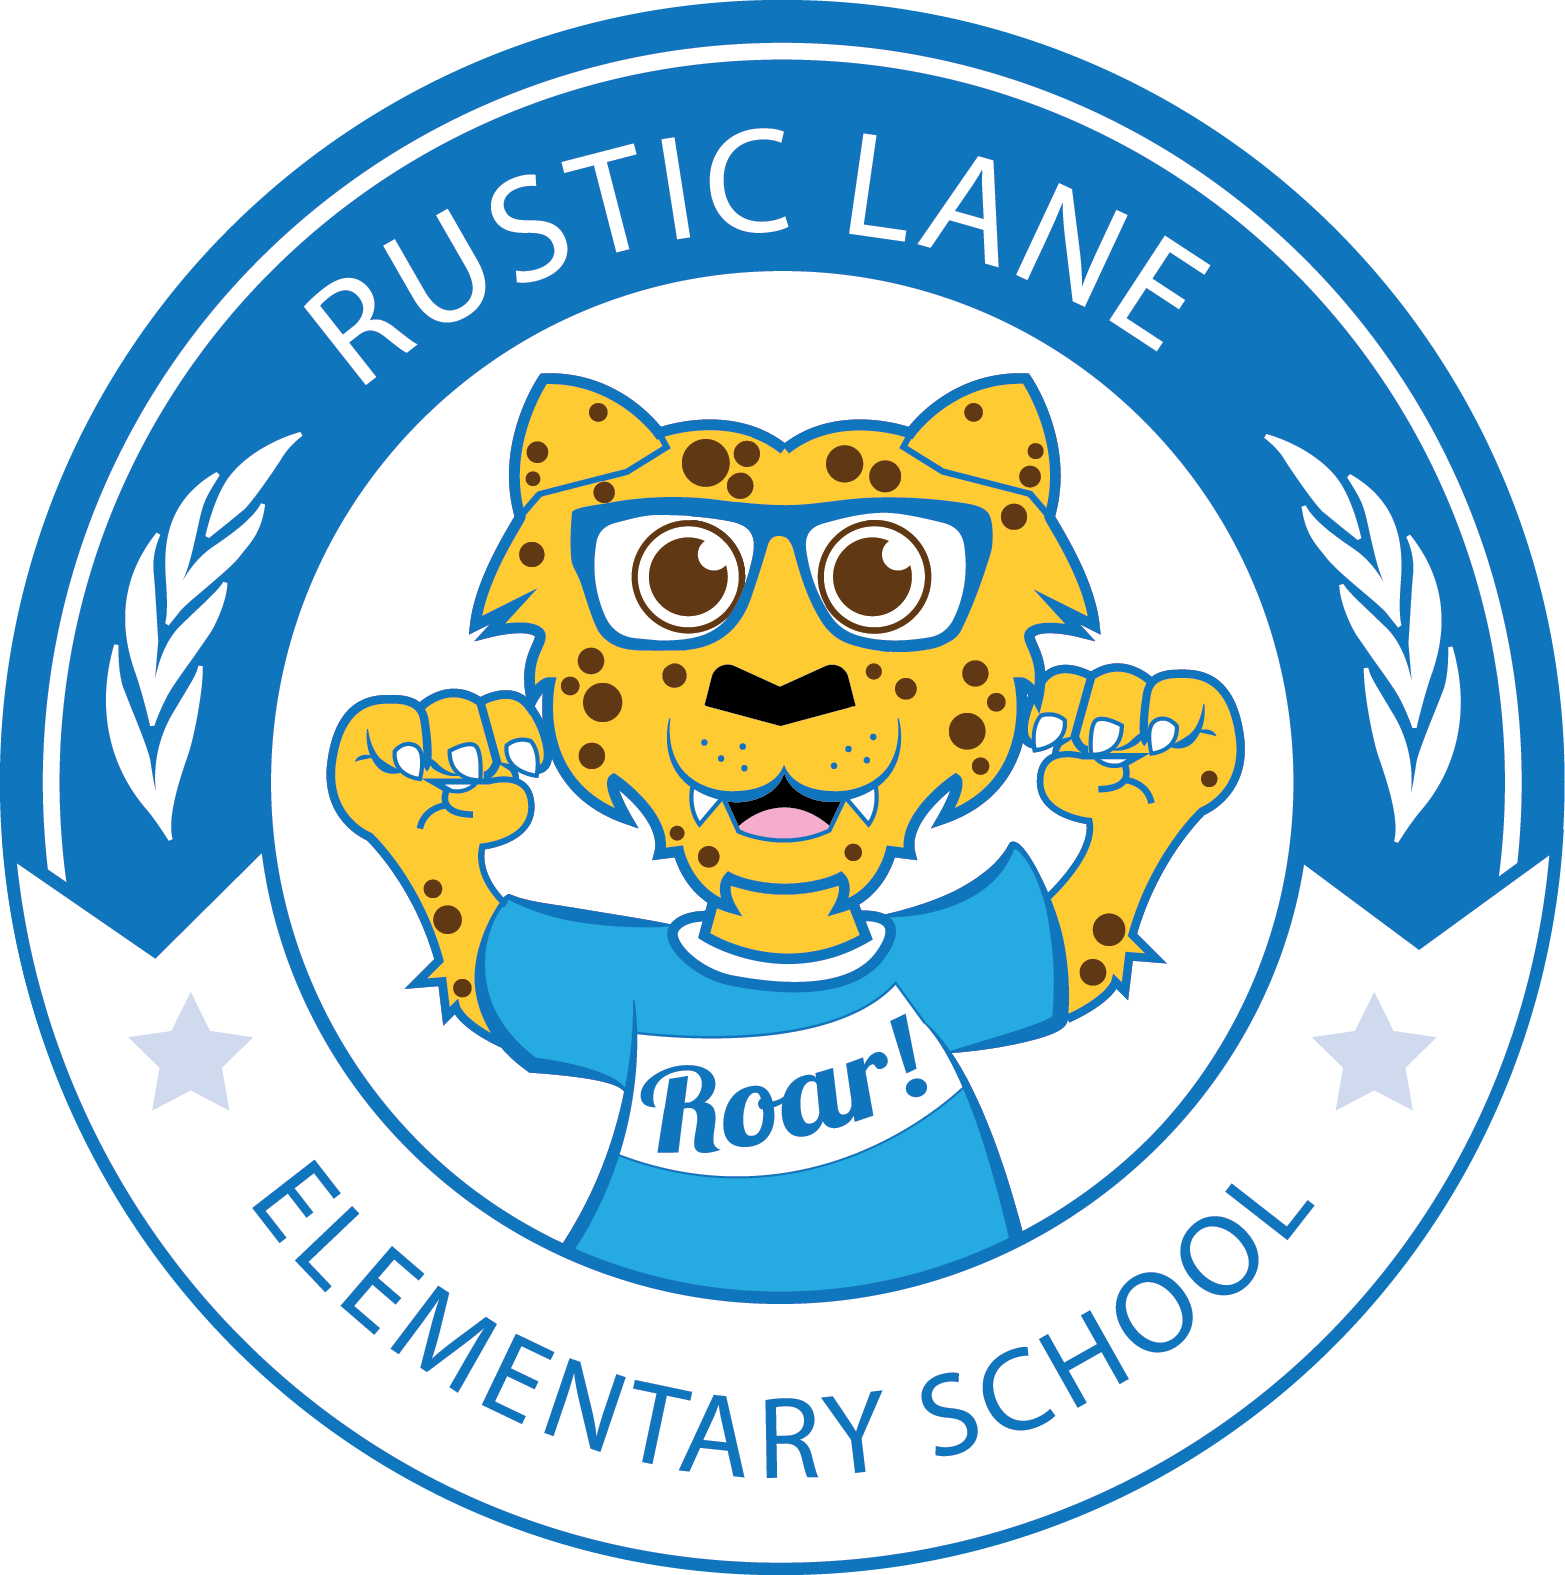 Rustic Lane logo.png